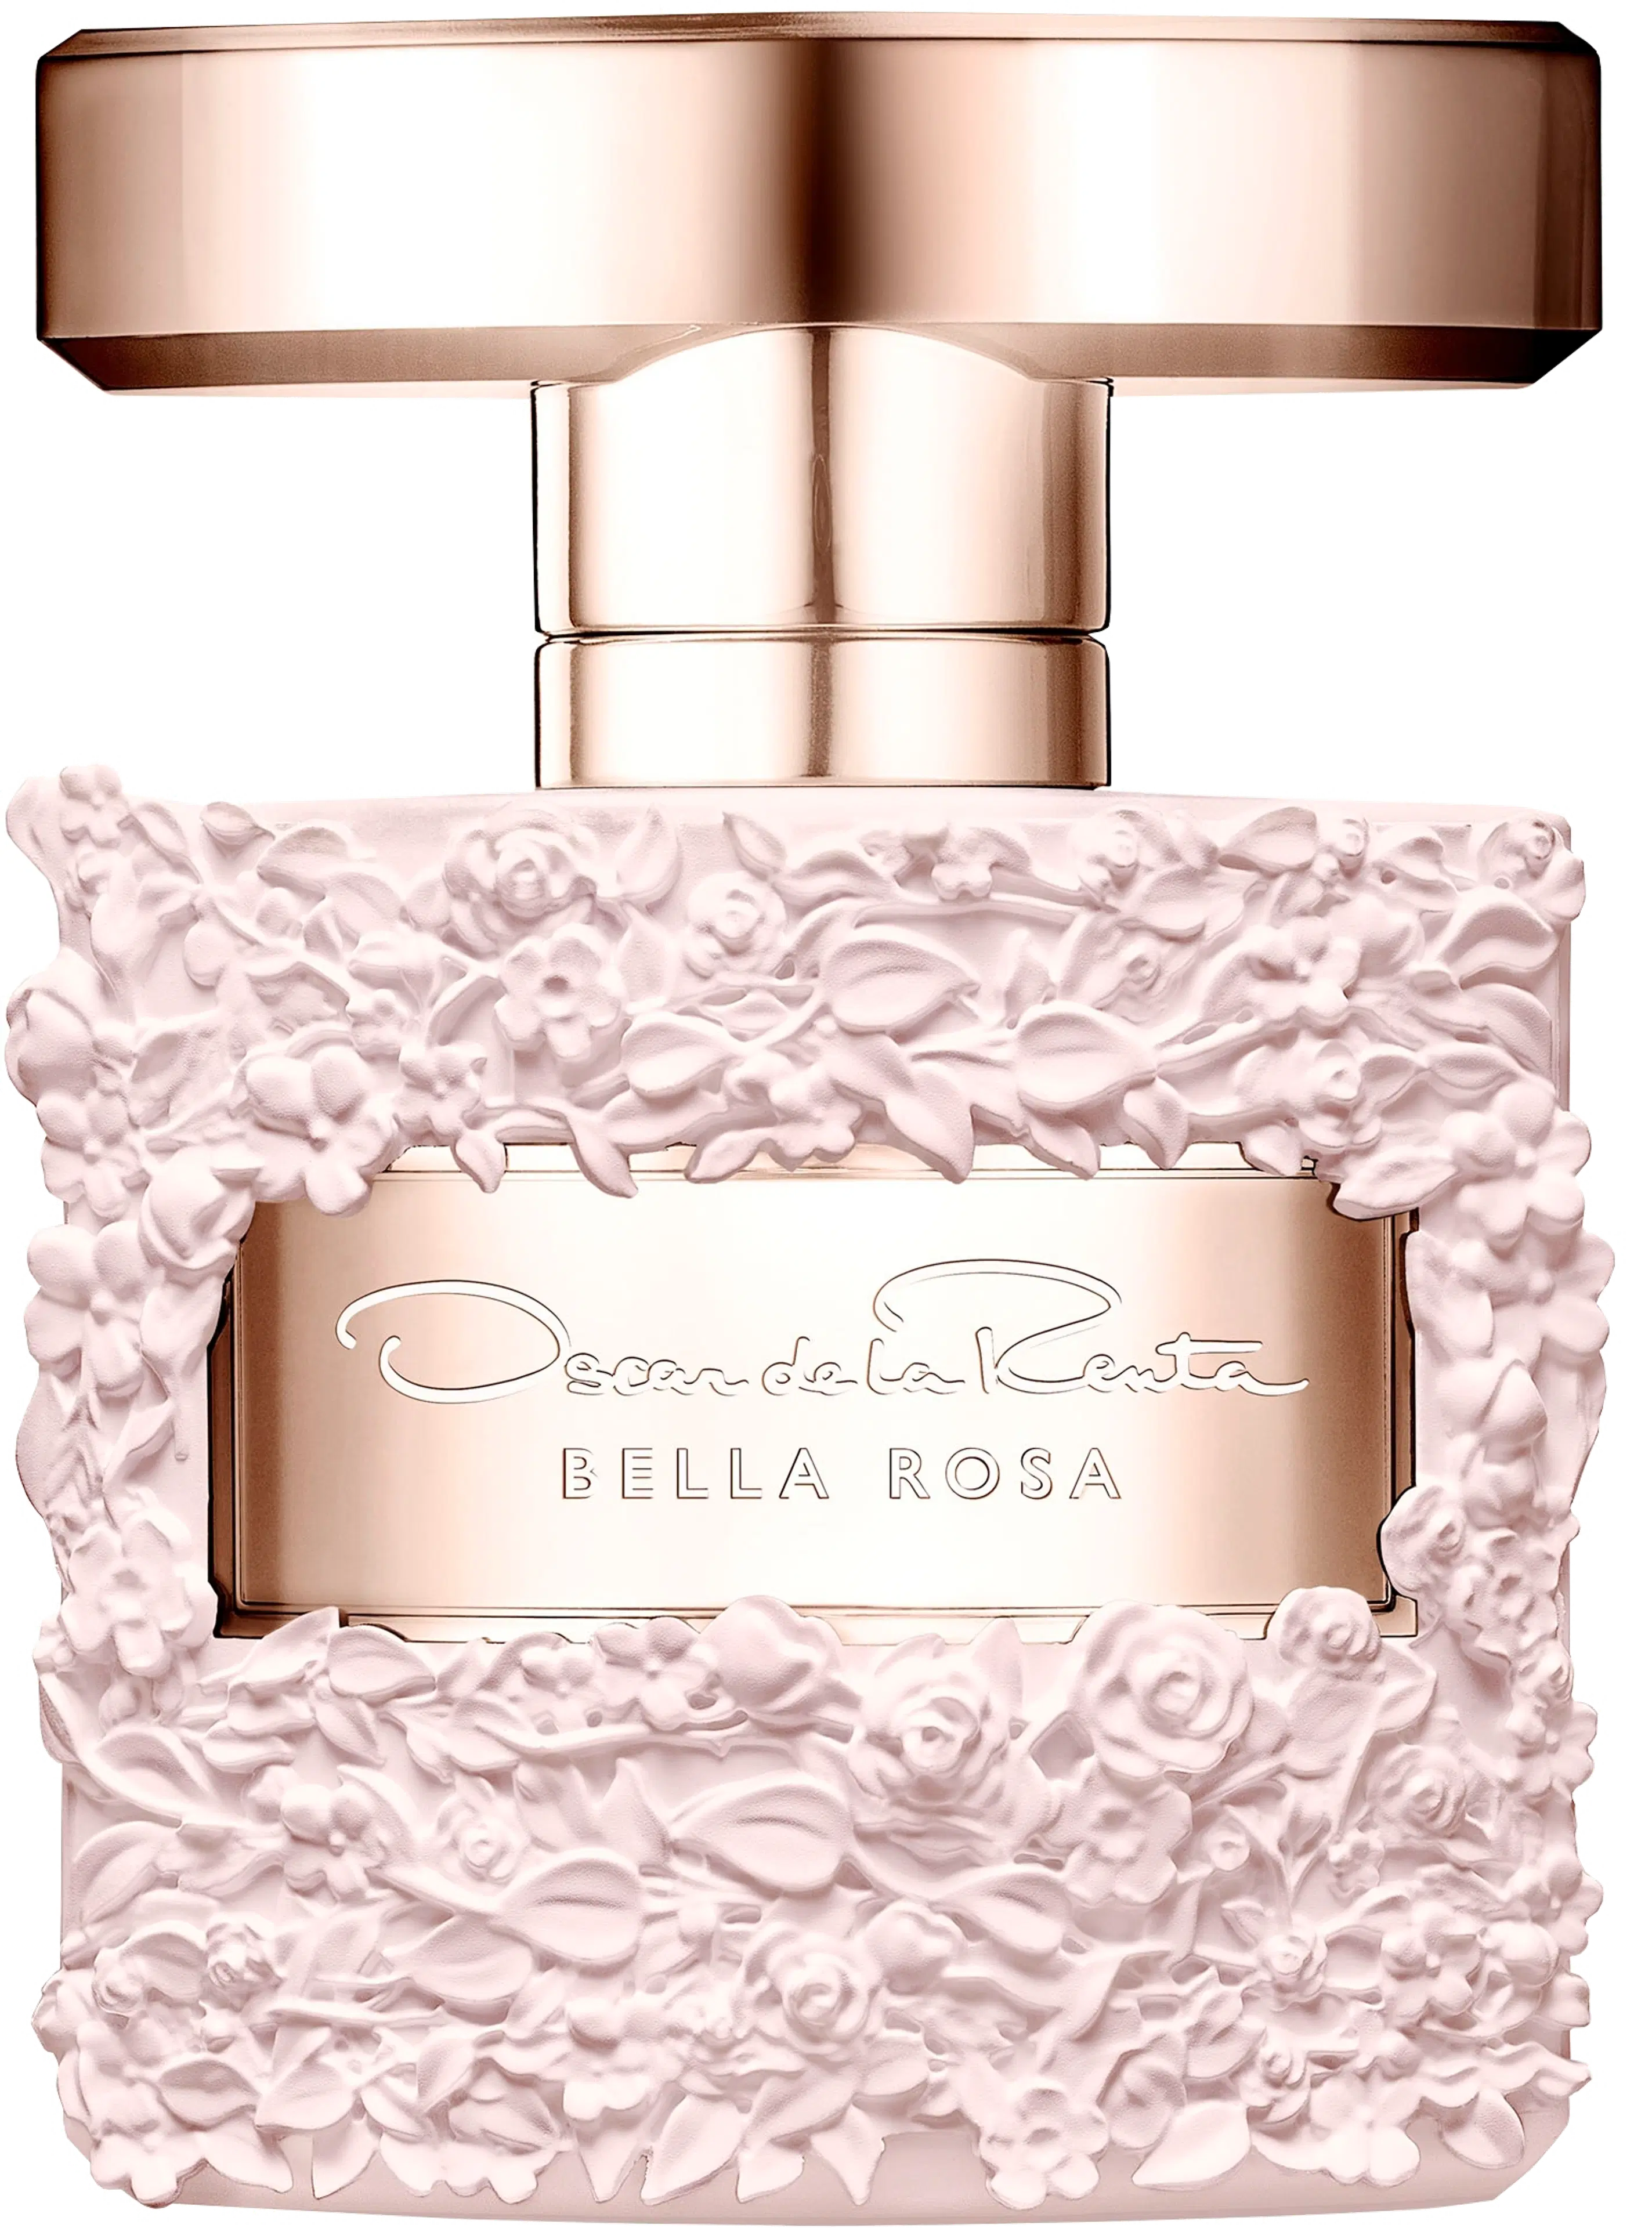 Oscar de la Renta 30ml Bella Rosa EDP